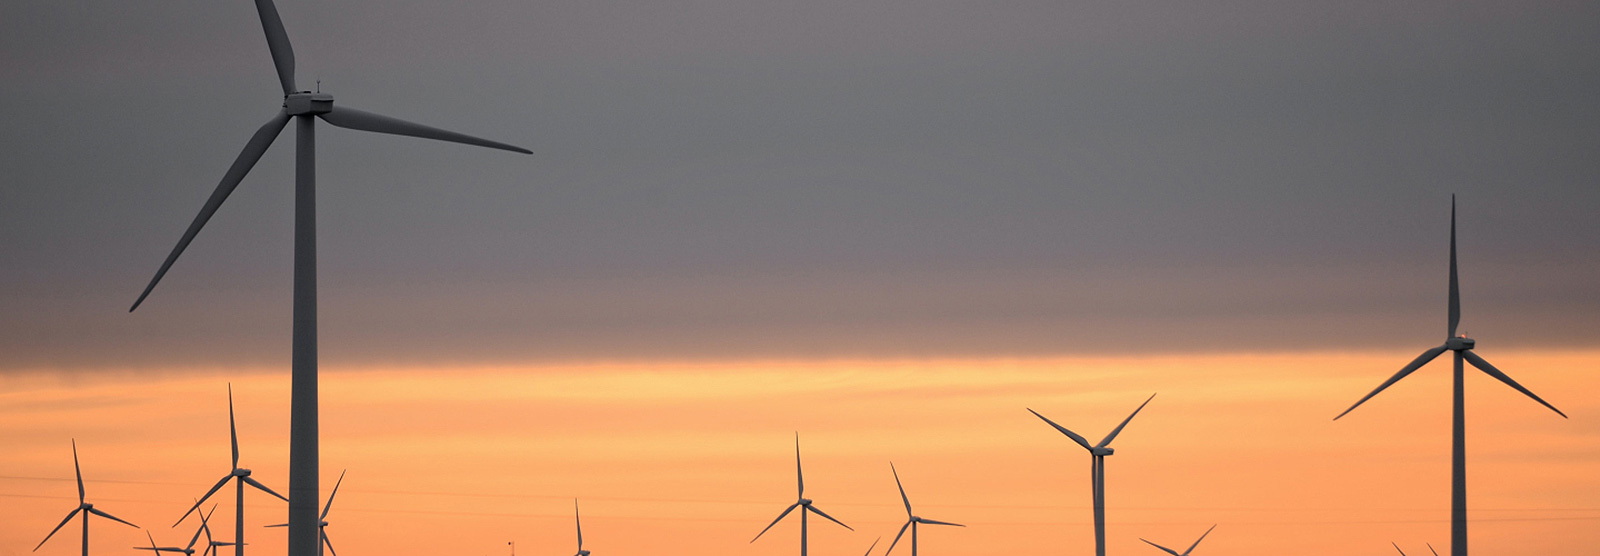 Wind turbines against sunset